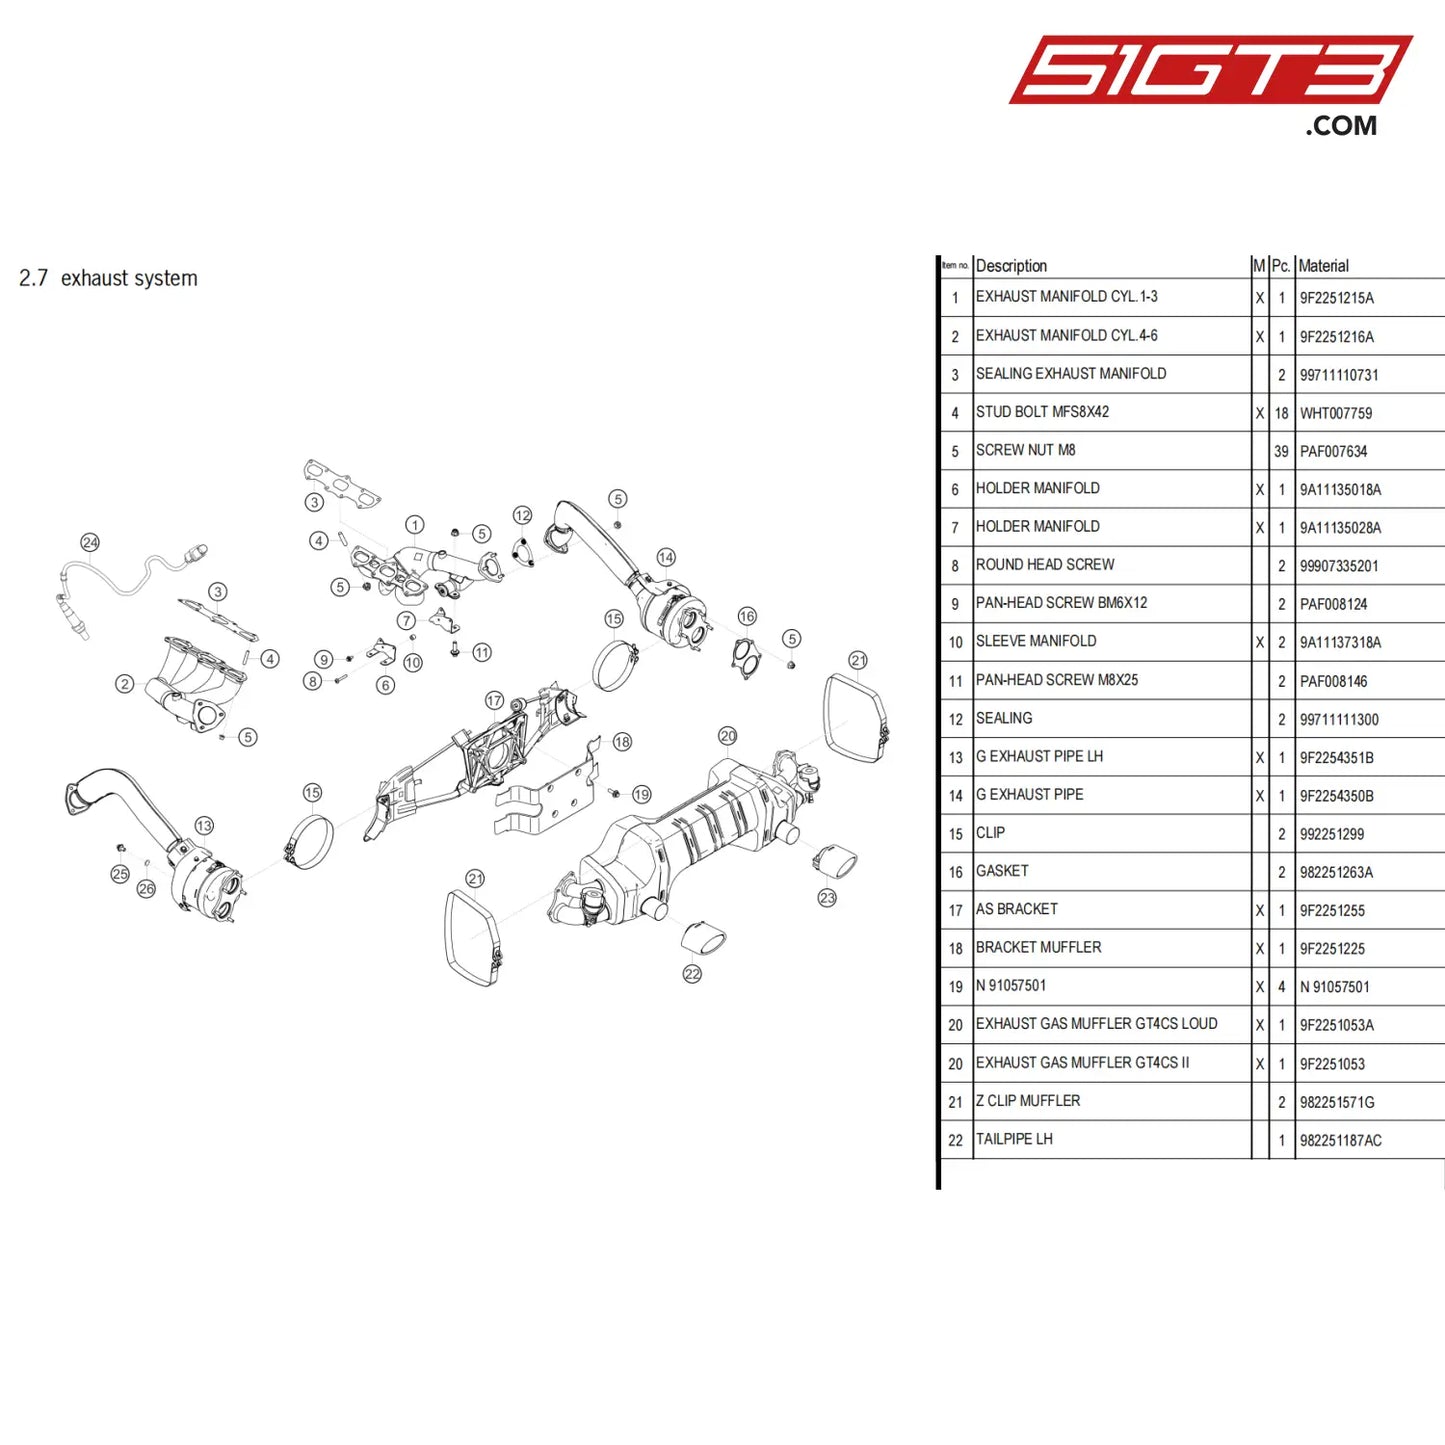 Sealing - 99711111300 [Porsche 718 Cayman Gt4 Clubsport] Exhaust System